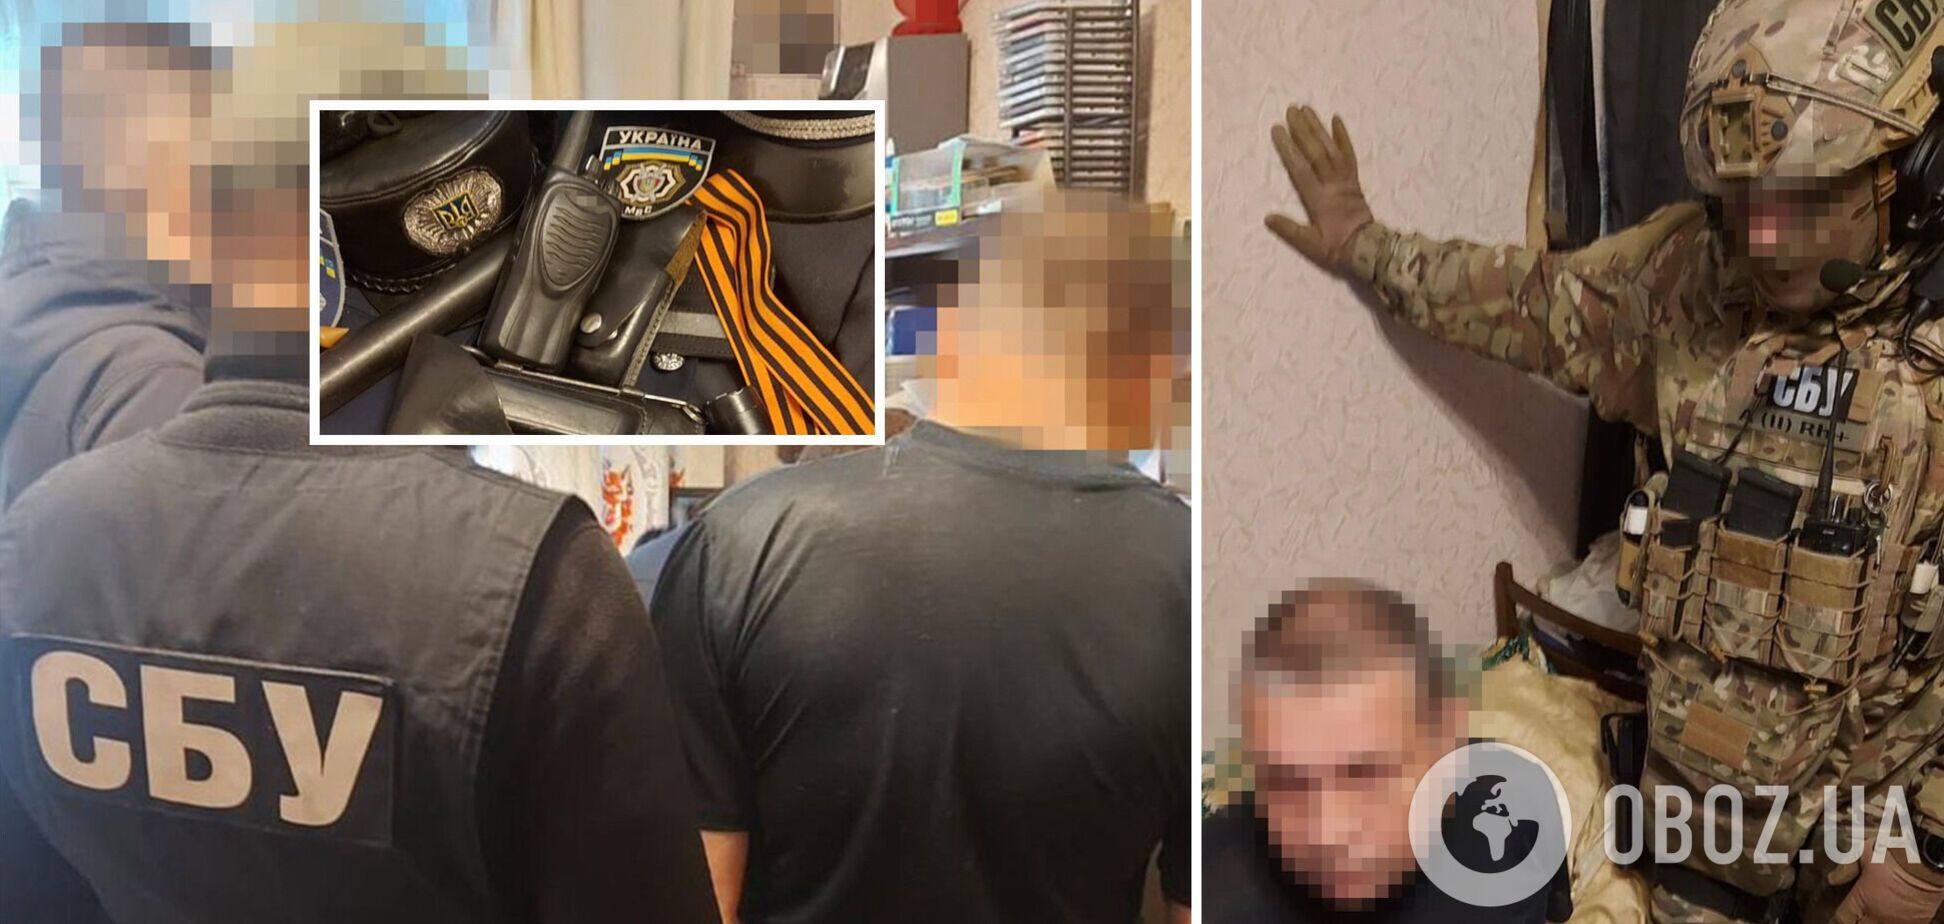 В Запорожье задержали бывшего милиционера, который хотел вступить в ЧВК 'Вагнер' и воевать против Украины. Фото и видео